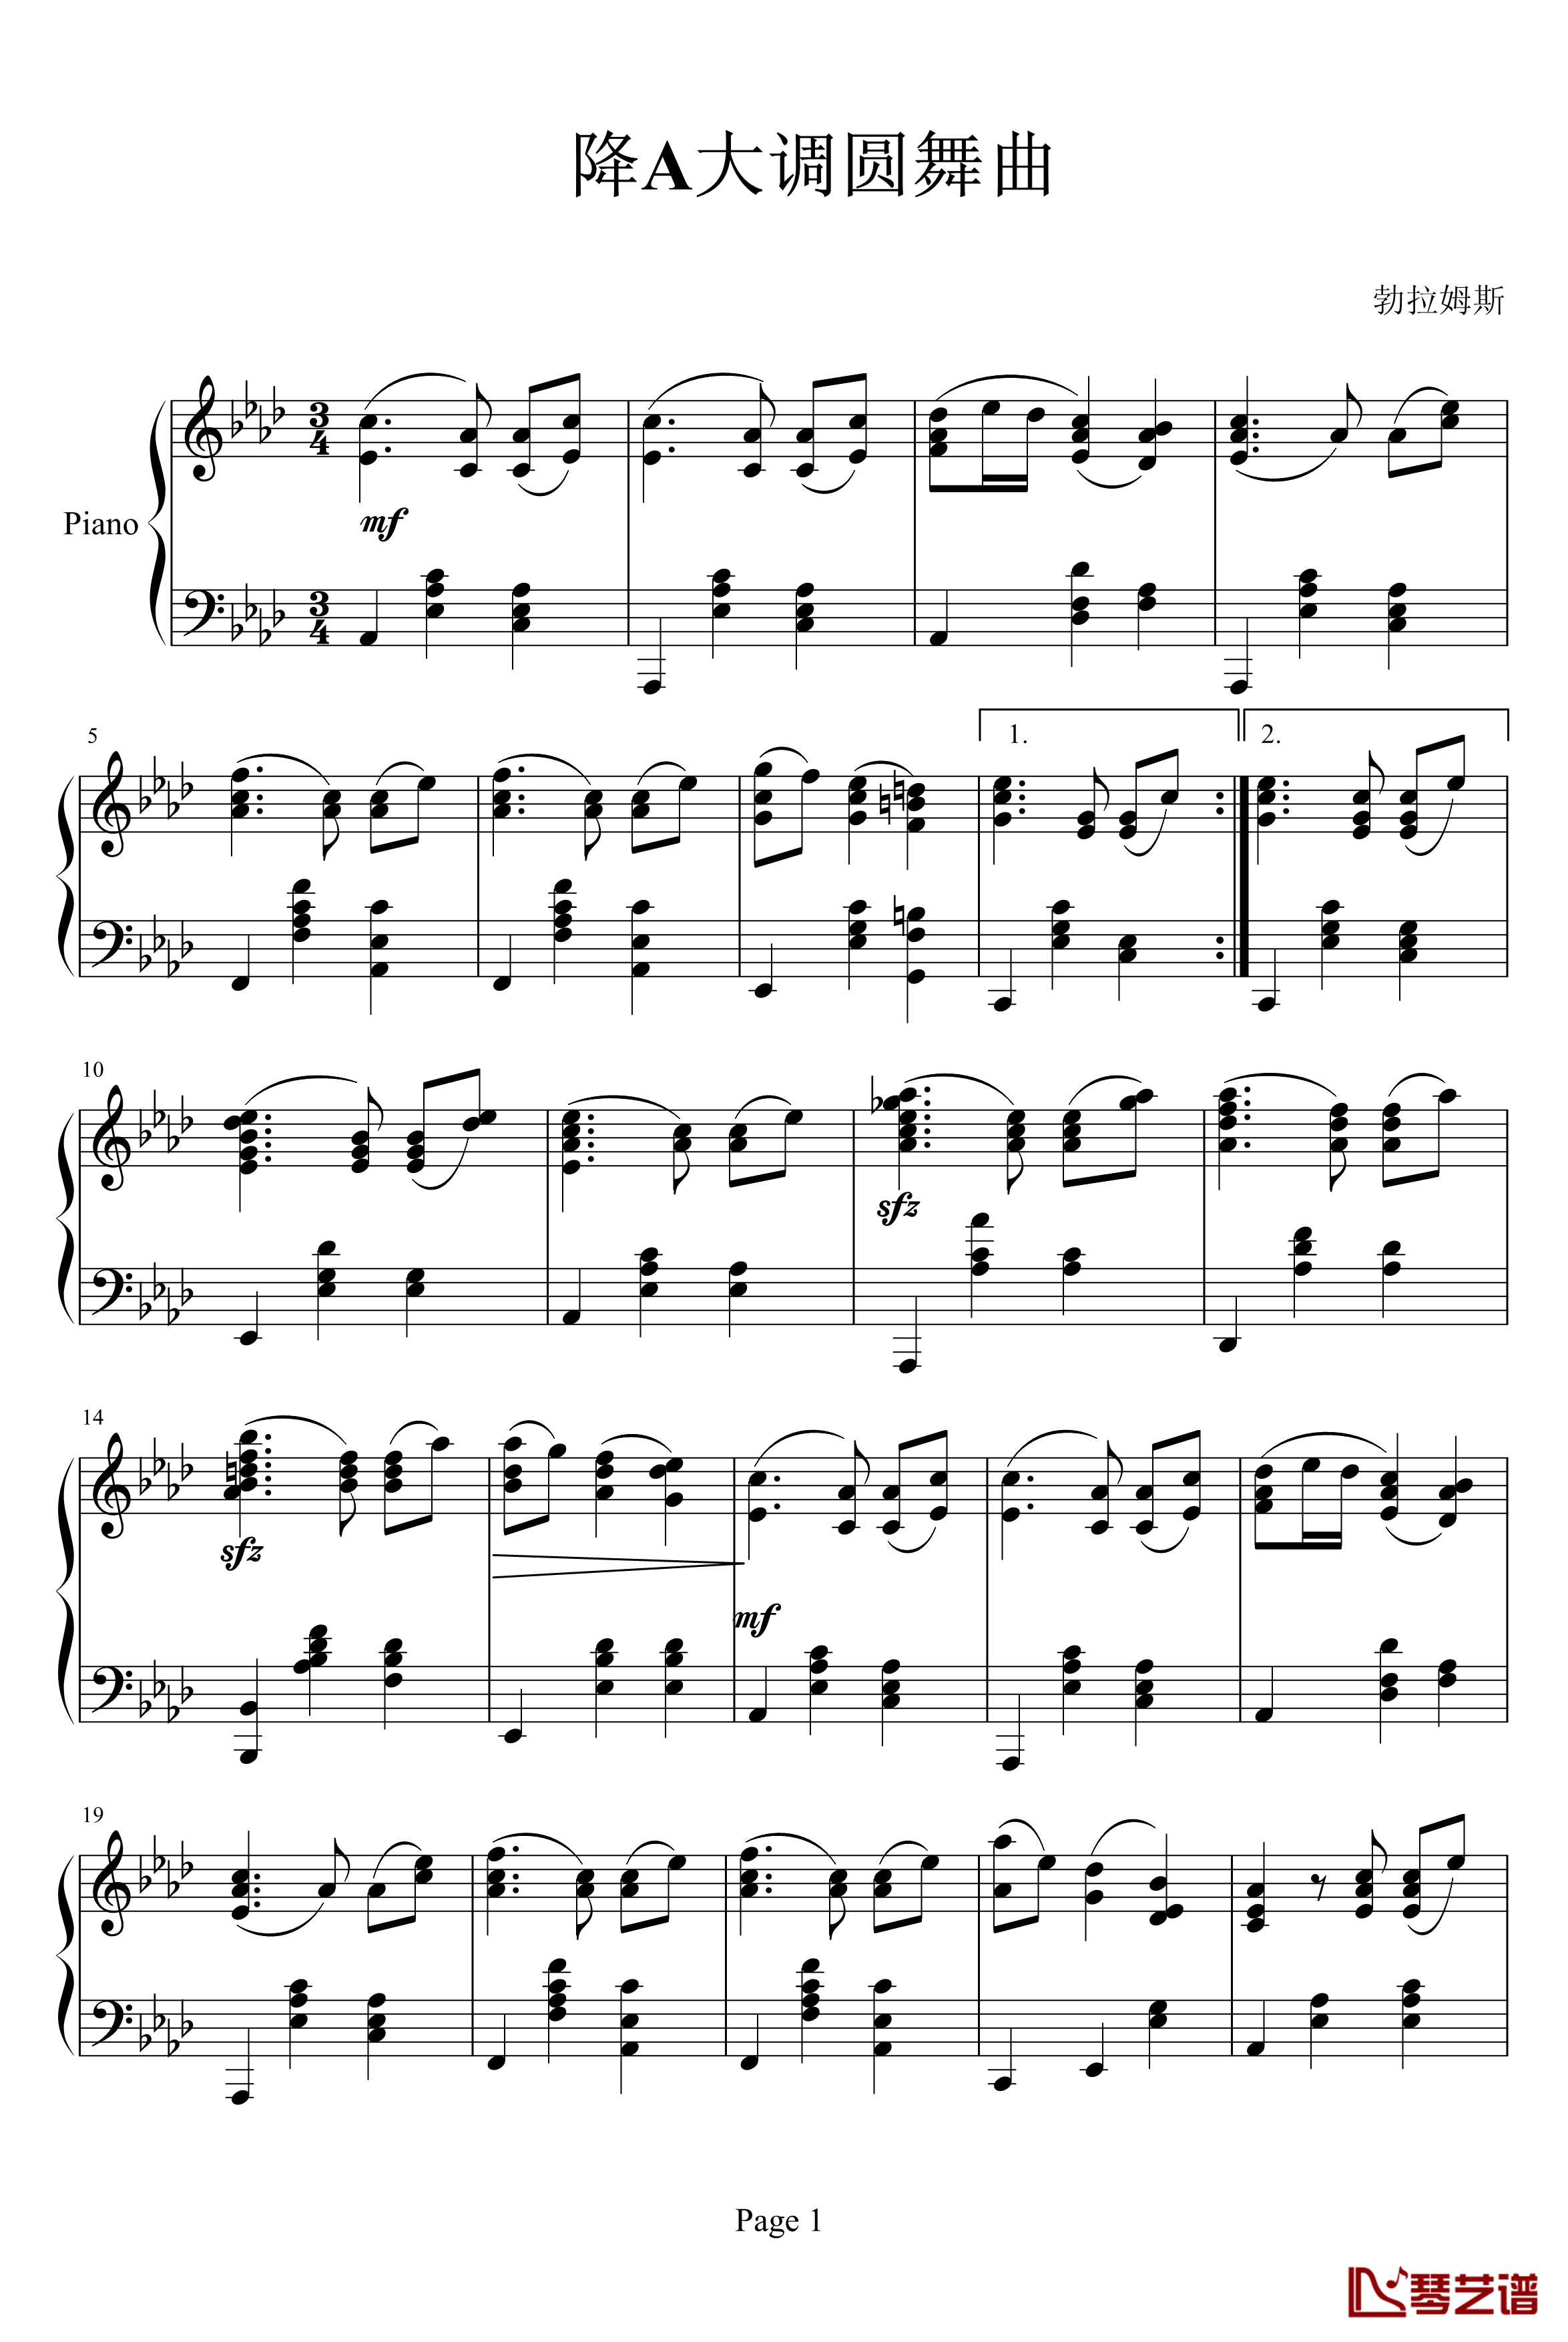 降A大调圆舞曲Op39NO.15钢琴谱-勃拉姆斯-Brahms1